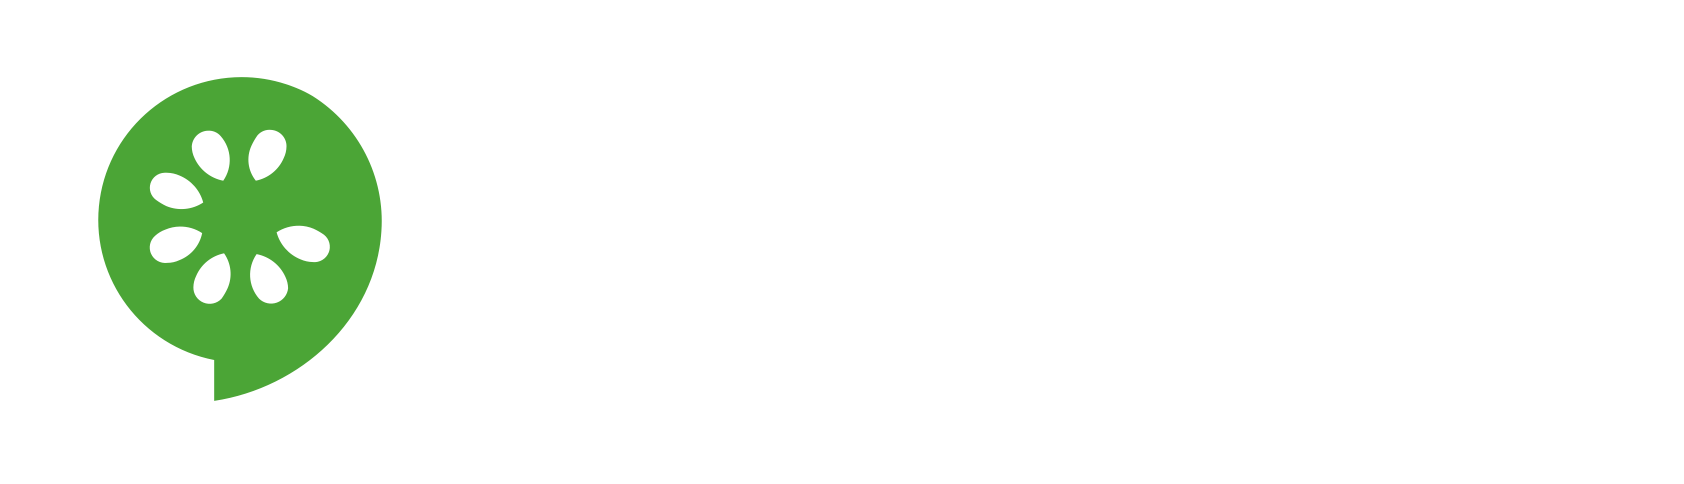 cucumoji.com logo